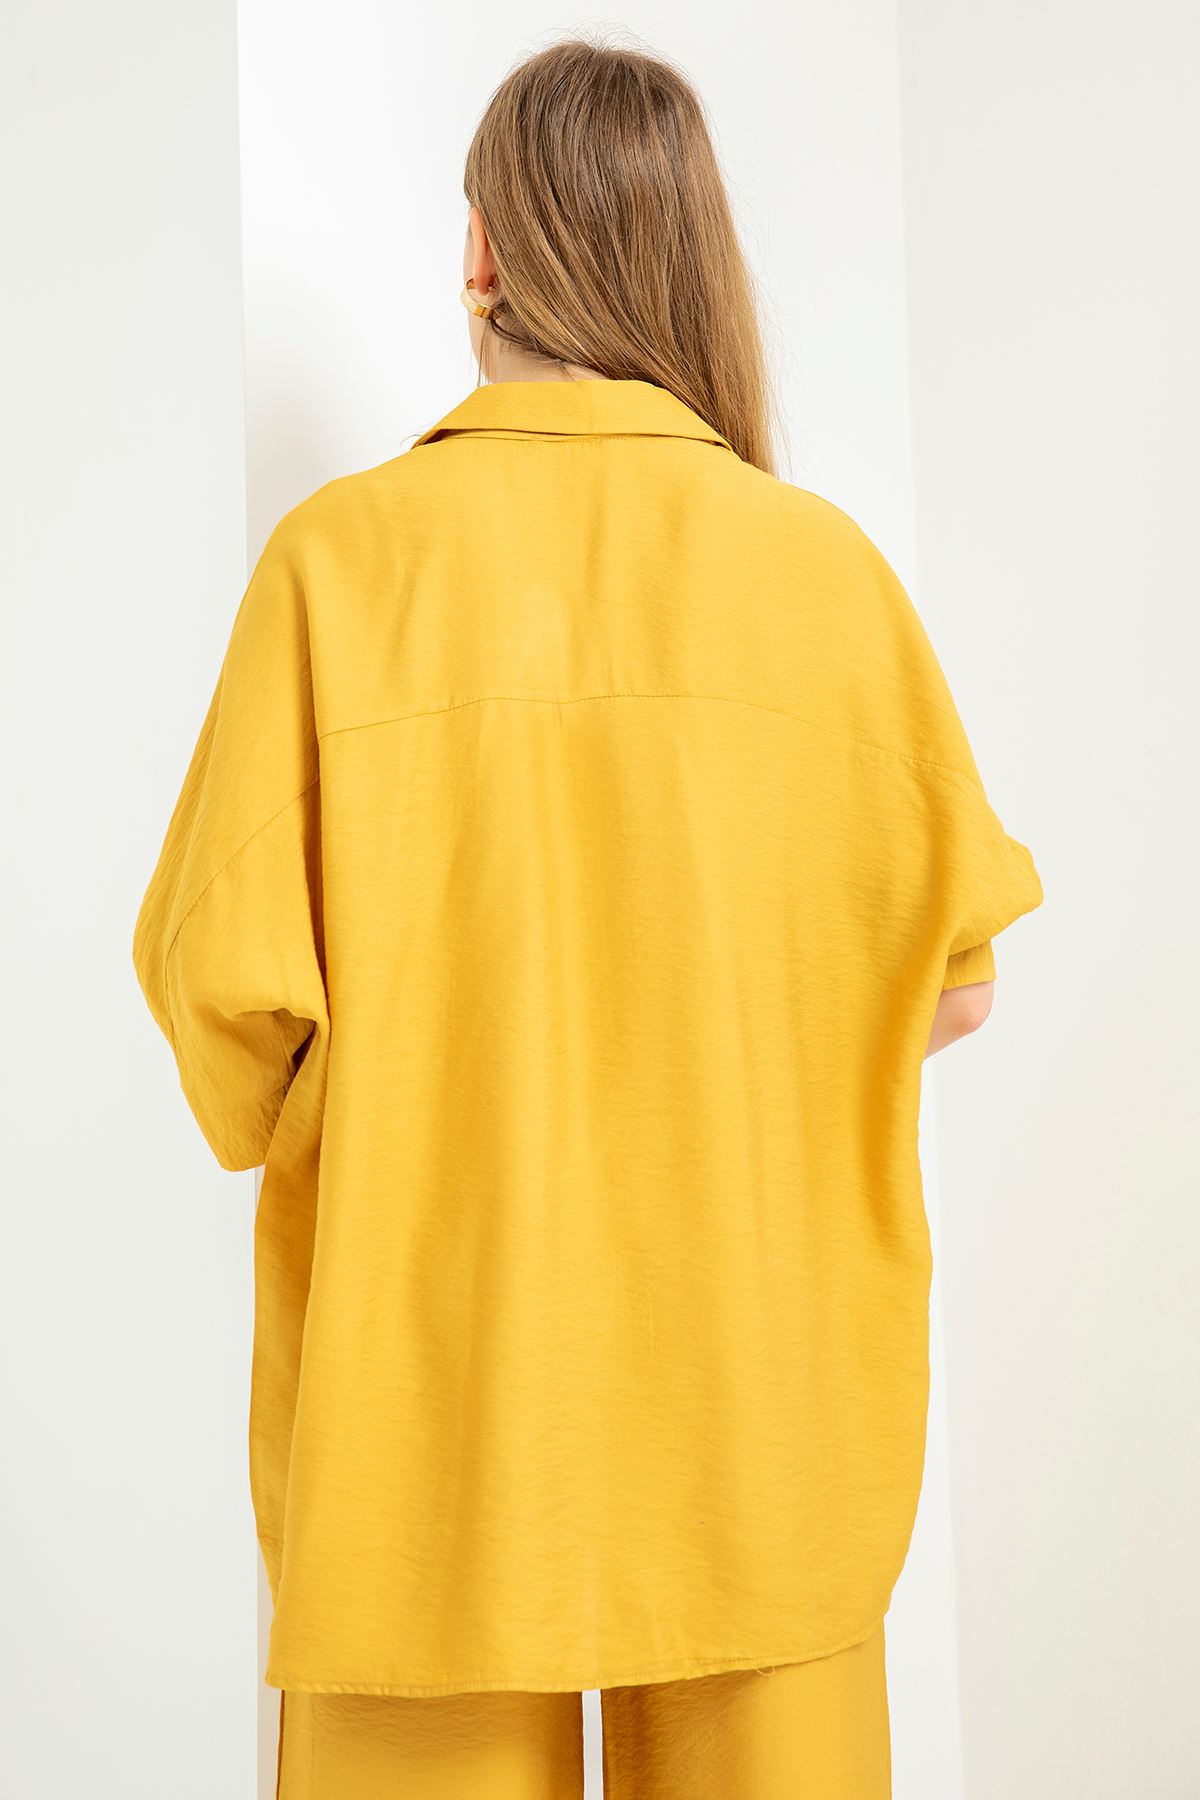 Aerobin Fabric Half Sleeve Shirt Below Hip Oversize Women'S Shirt - Mustard